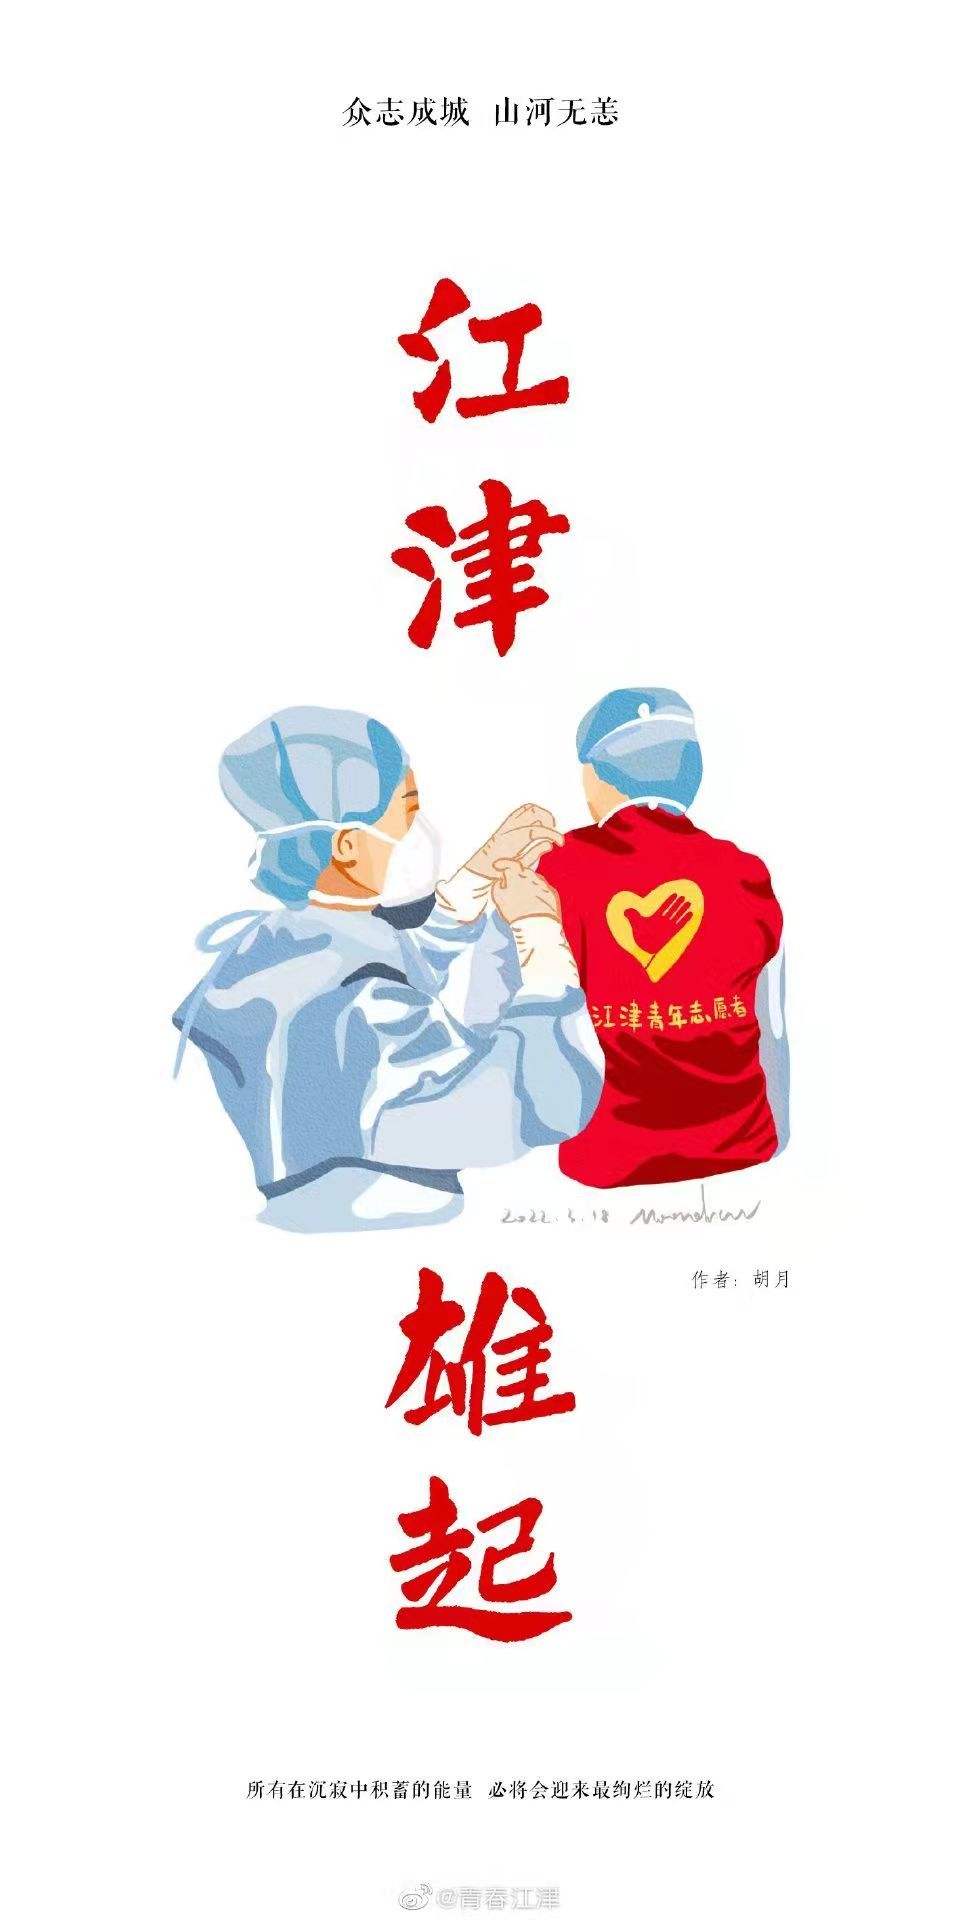 9张海报致敬江津疫情防控中的医护人员青年志愿者